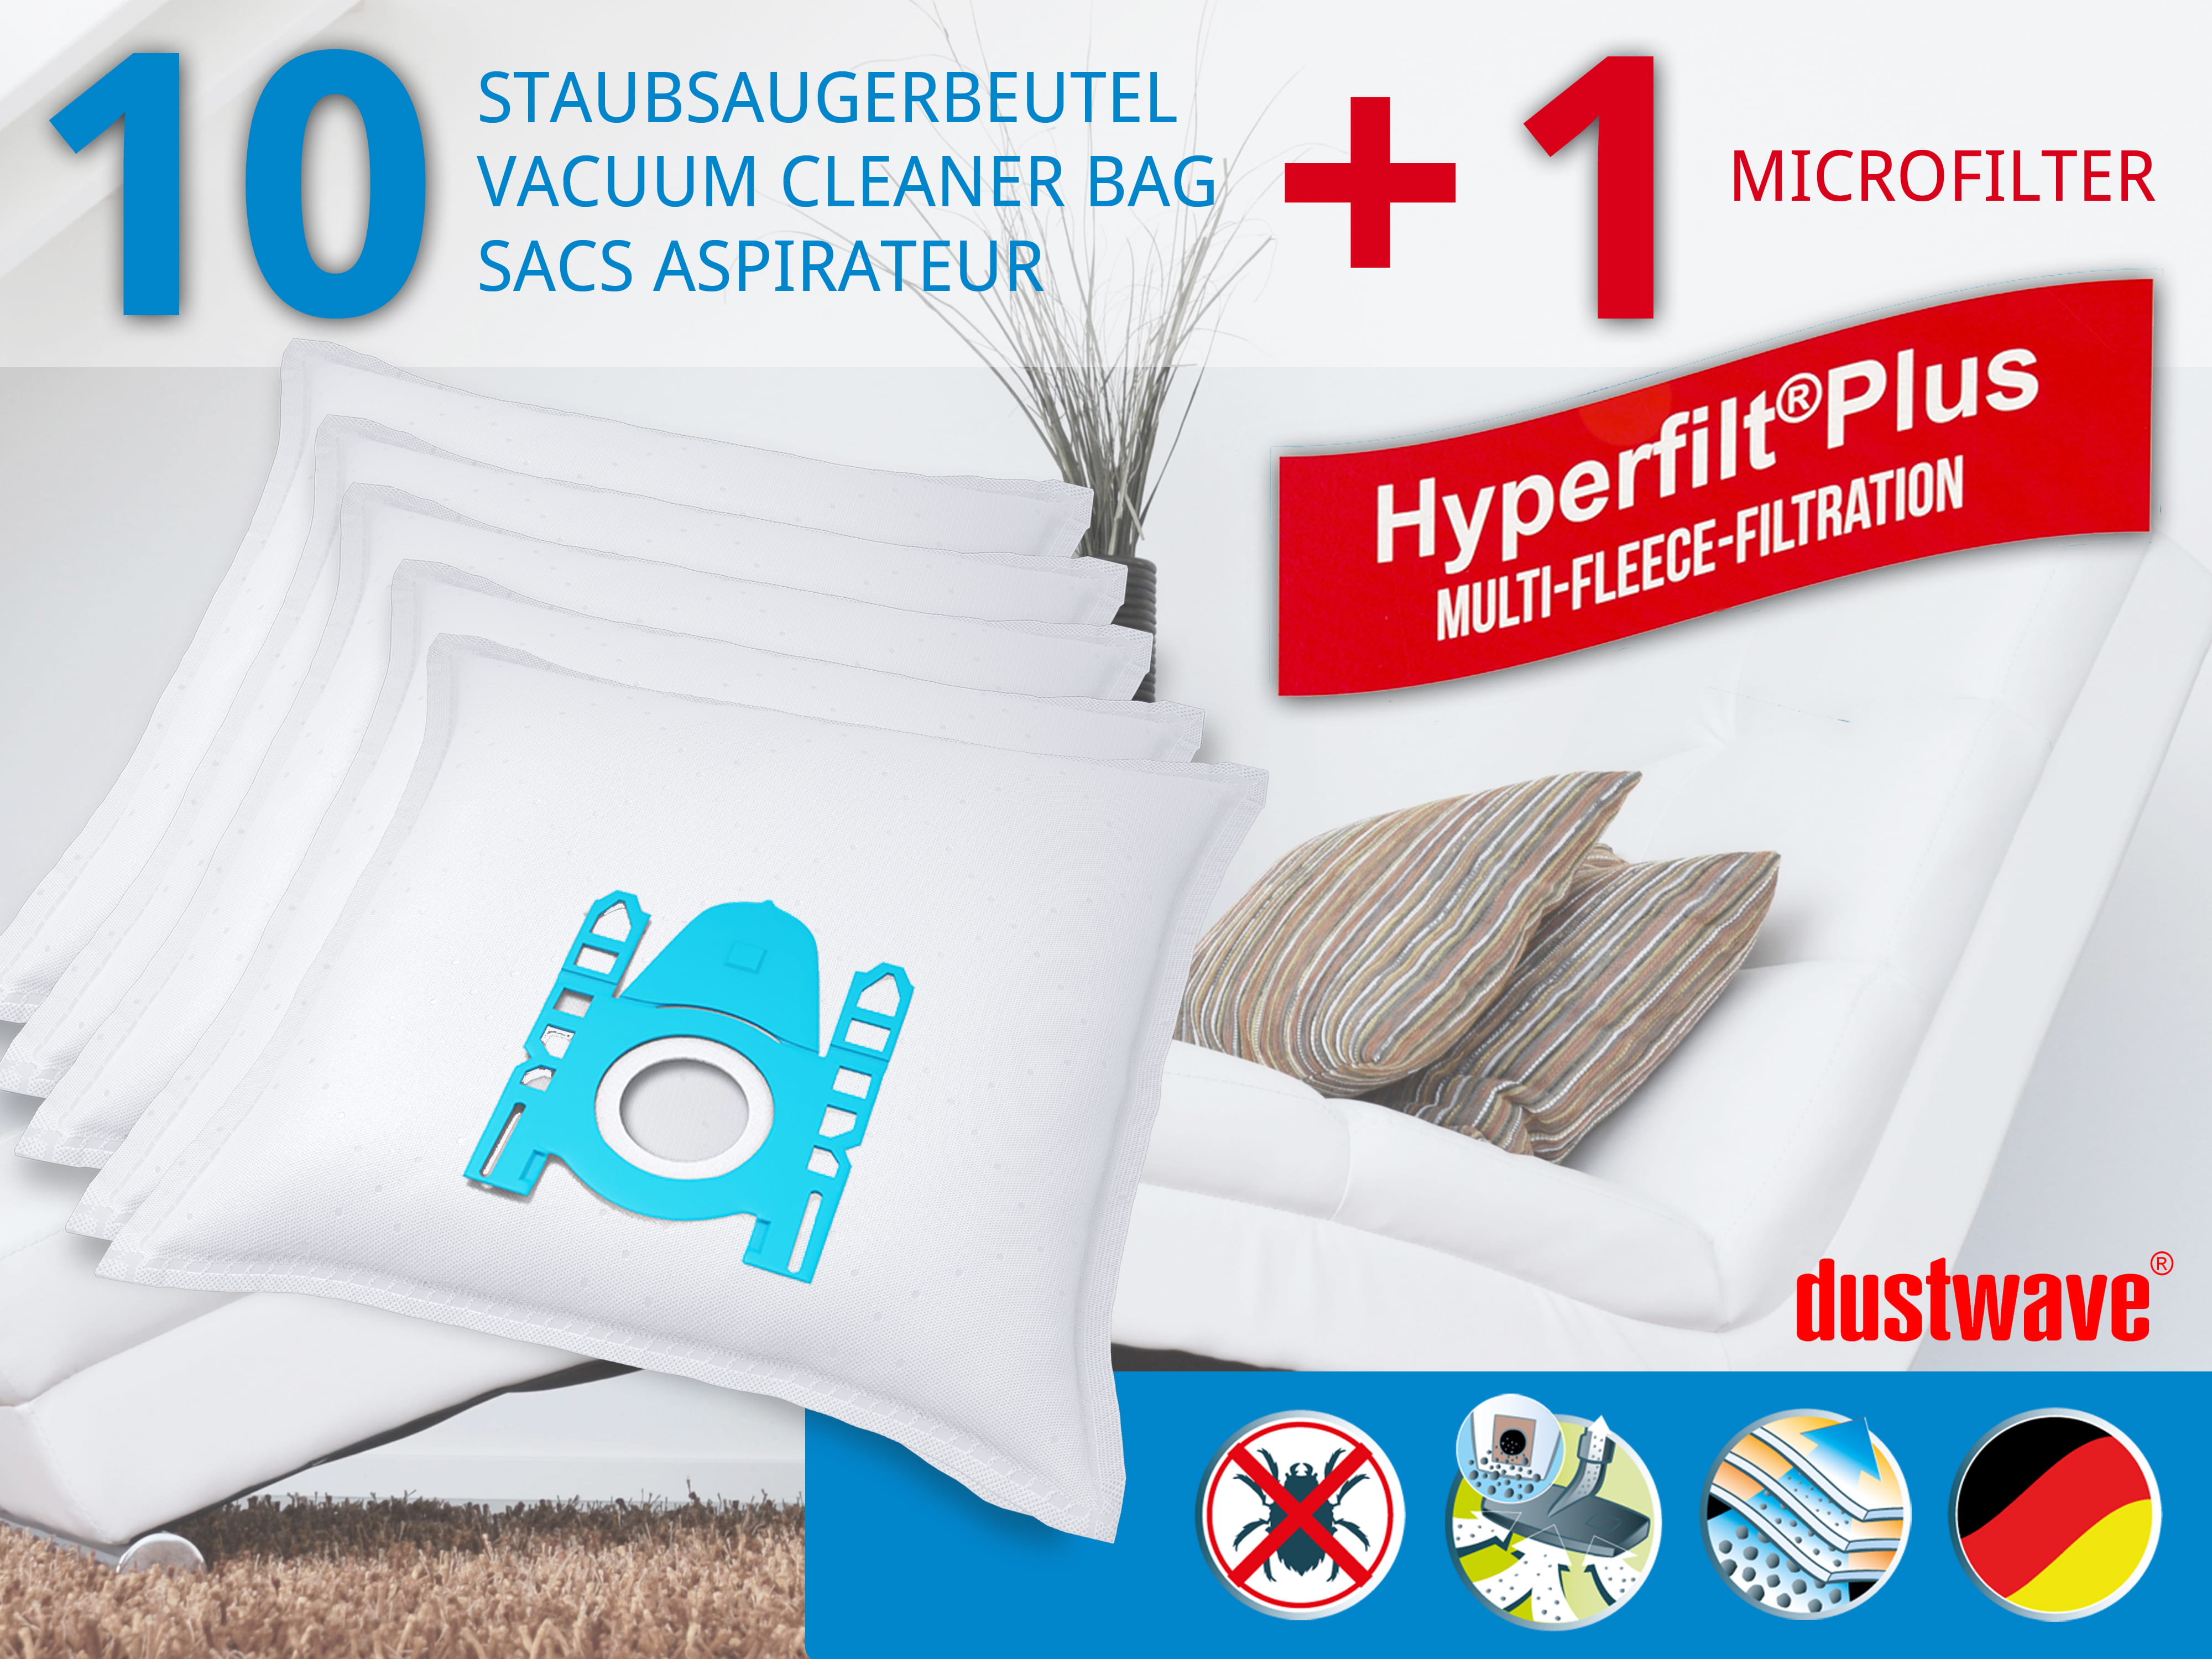 Dustwave® 10 Staubsaugerbeutel für Base BA 2000 / BA2000 - hocheffizient mit Hygieneverschluss - Made in Germany